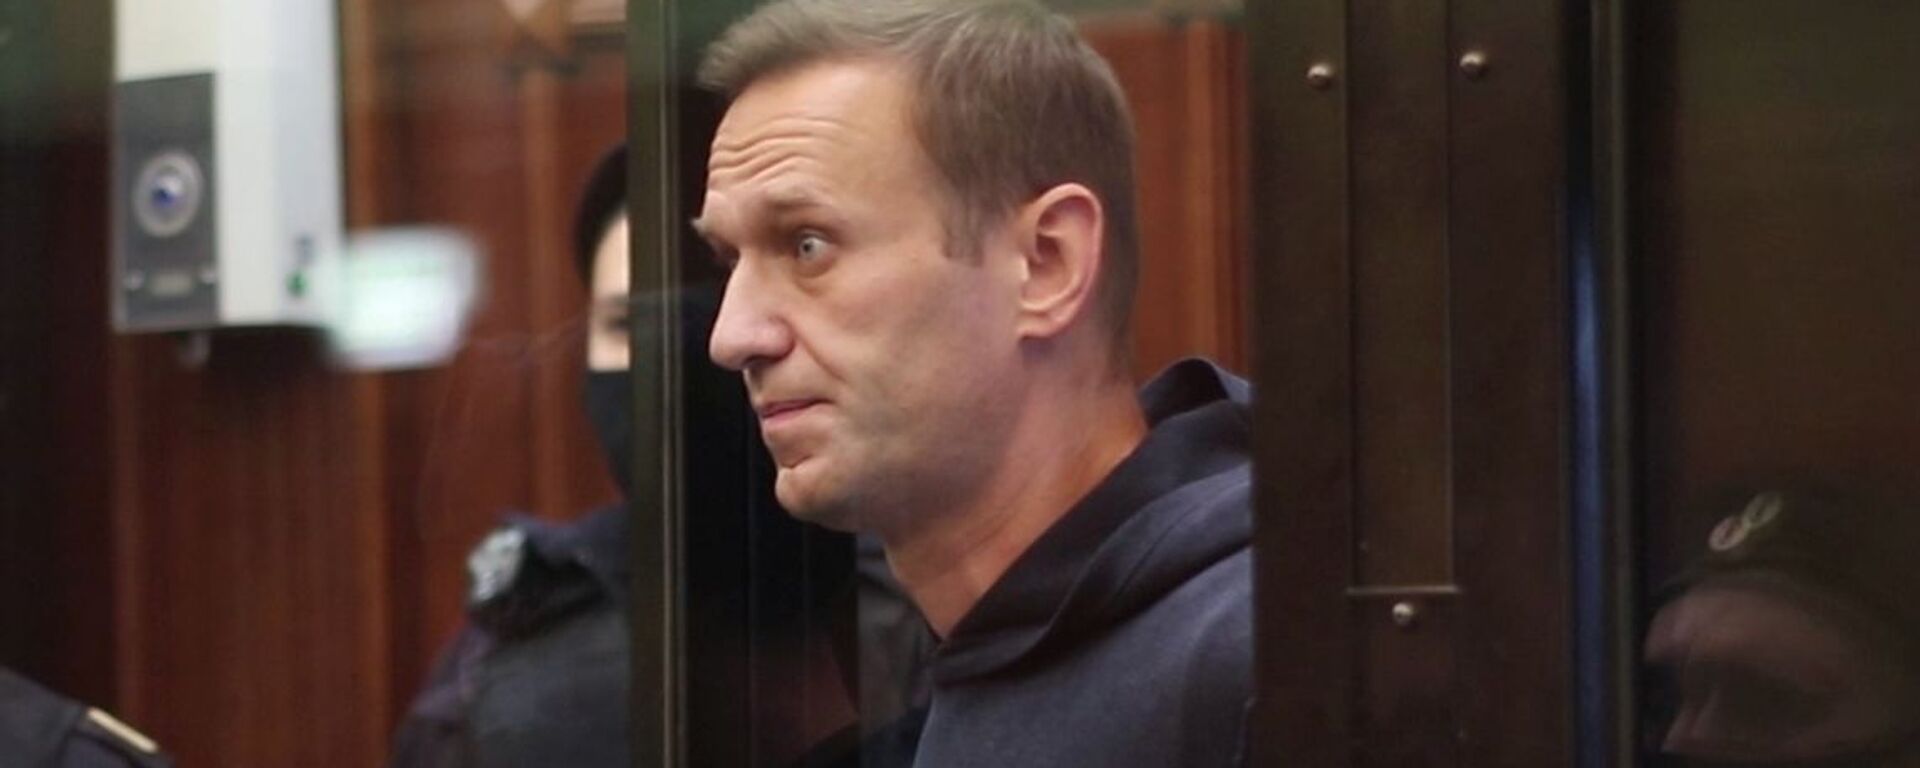 El bloguero opositor ruso, Alexéi Navalni - Sputnik Mundo, 1920, 02.02.2021